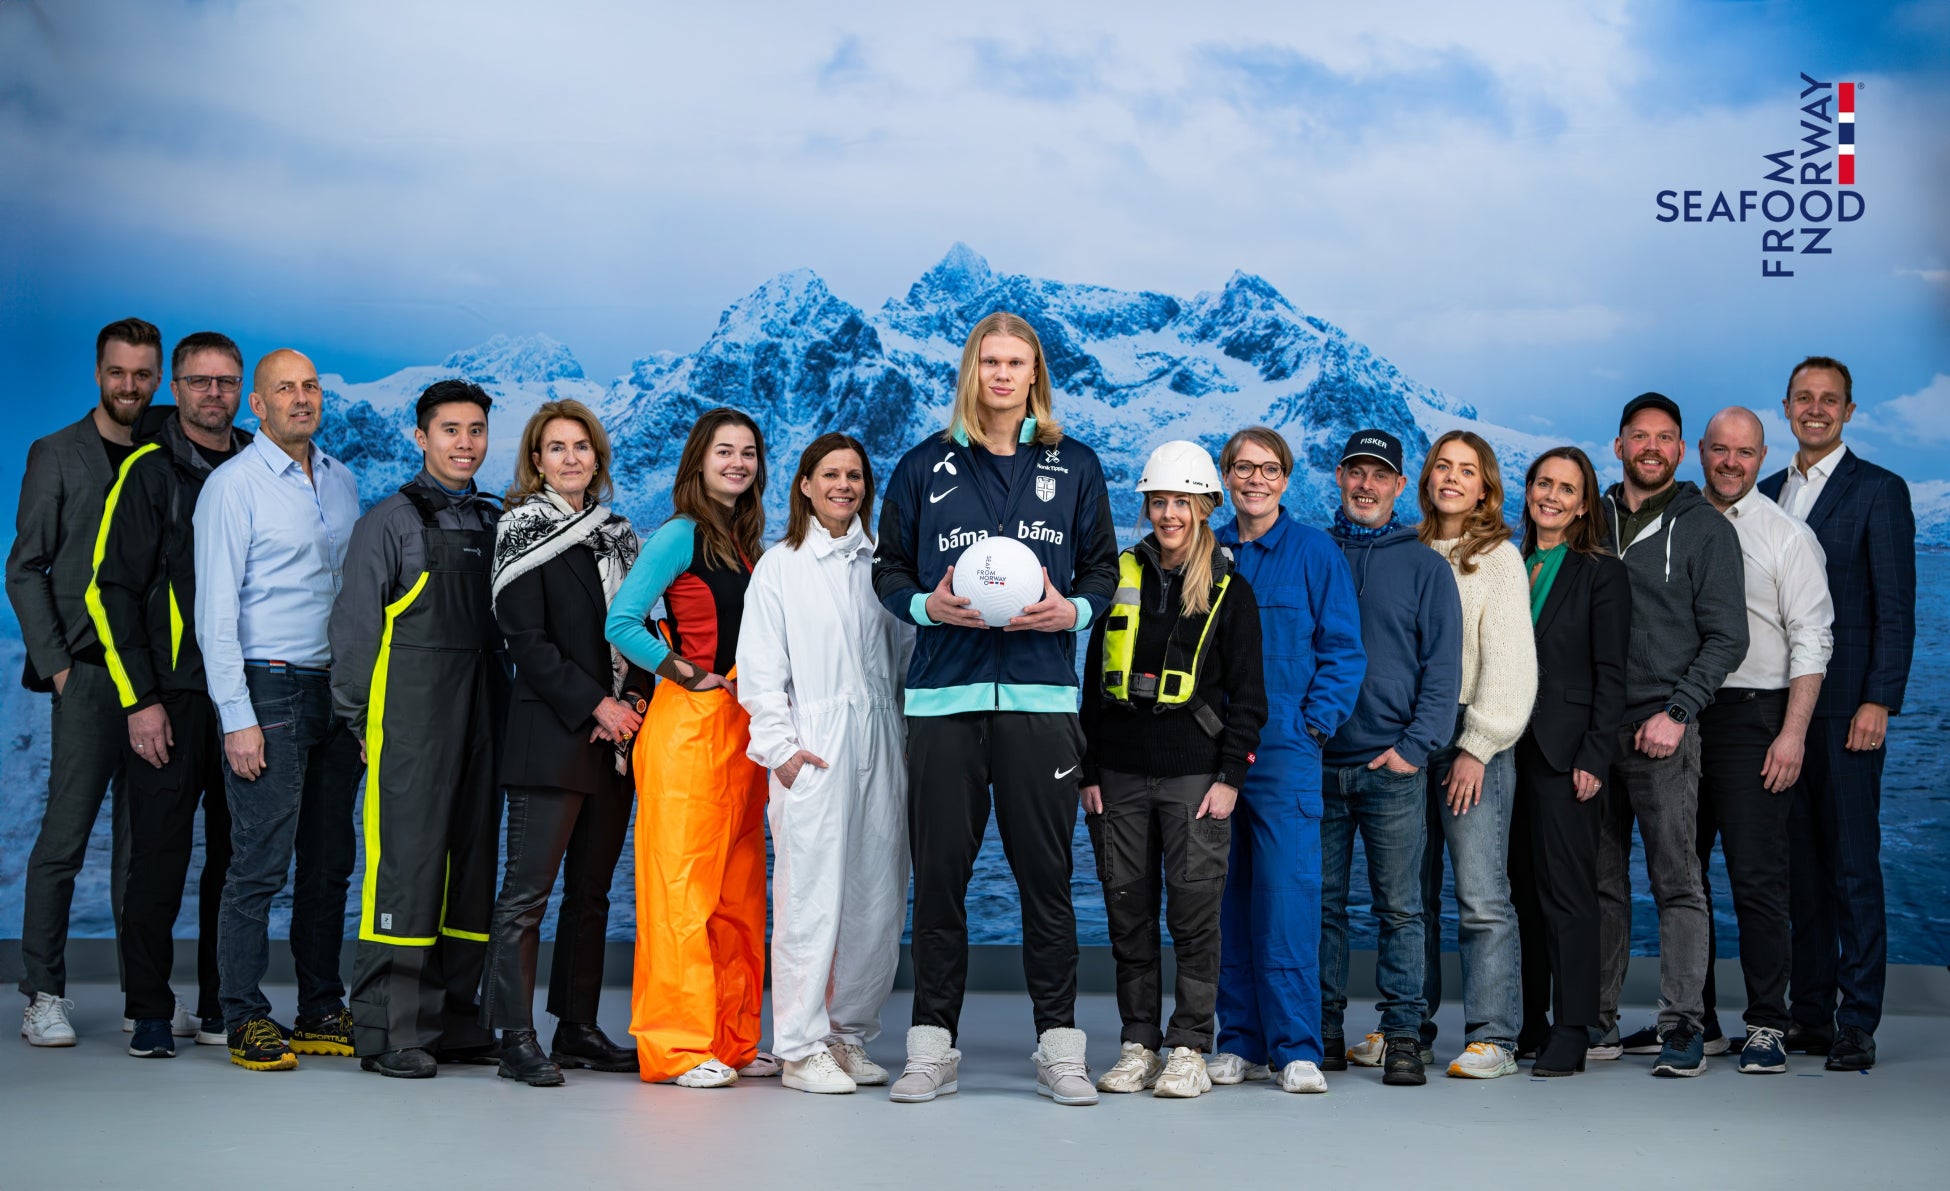 Seafood from Norwayがノルウェーを代表する世界的サッカー選手アーリング・ハーランド選手とのグローバルパートナーシップを発表